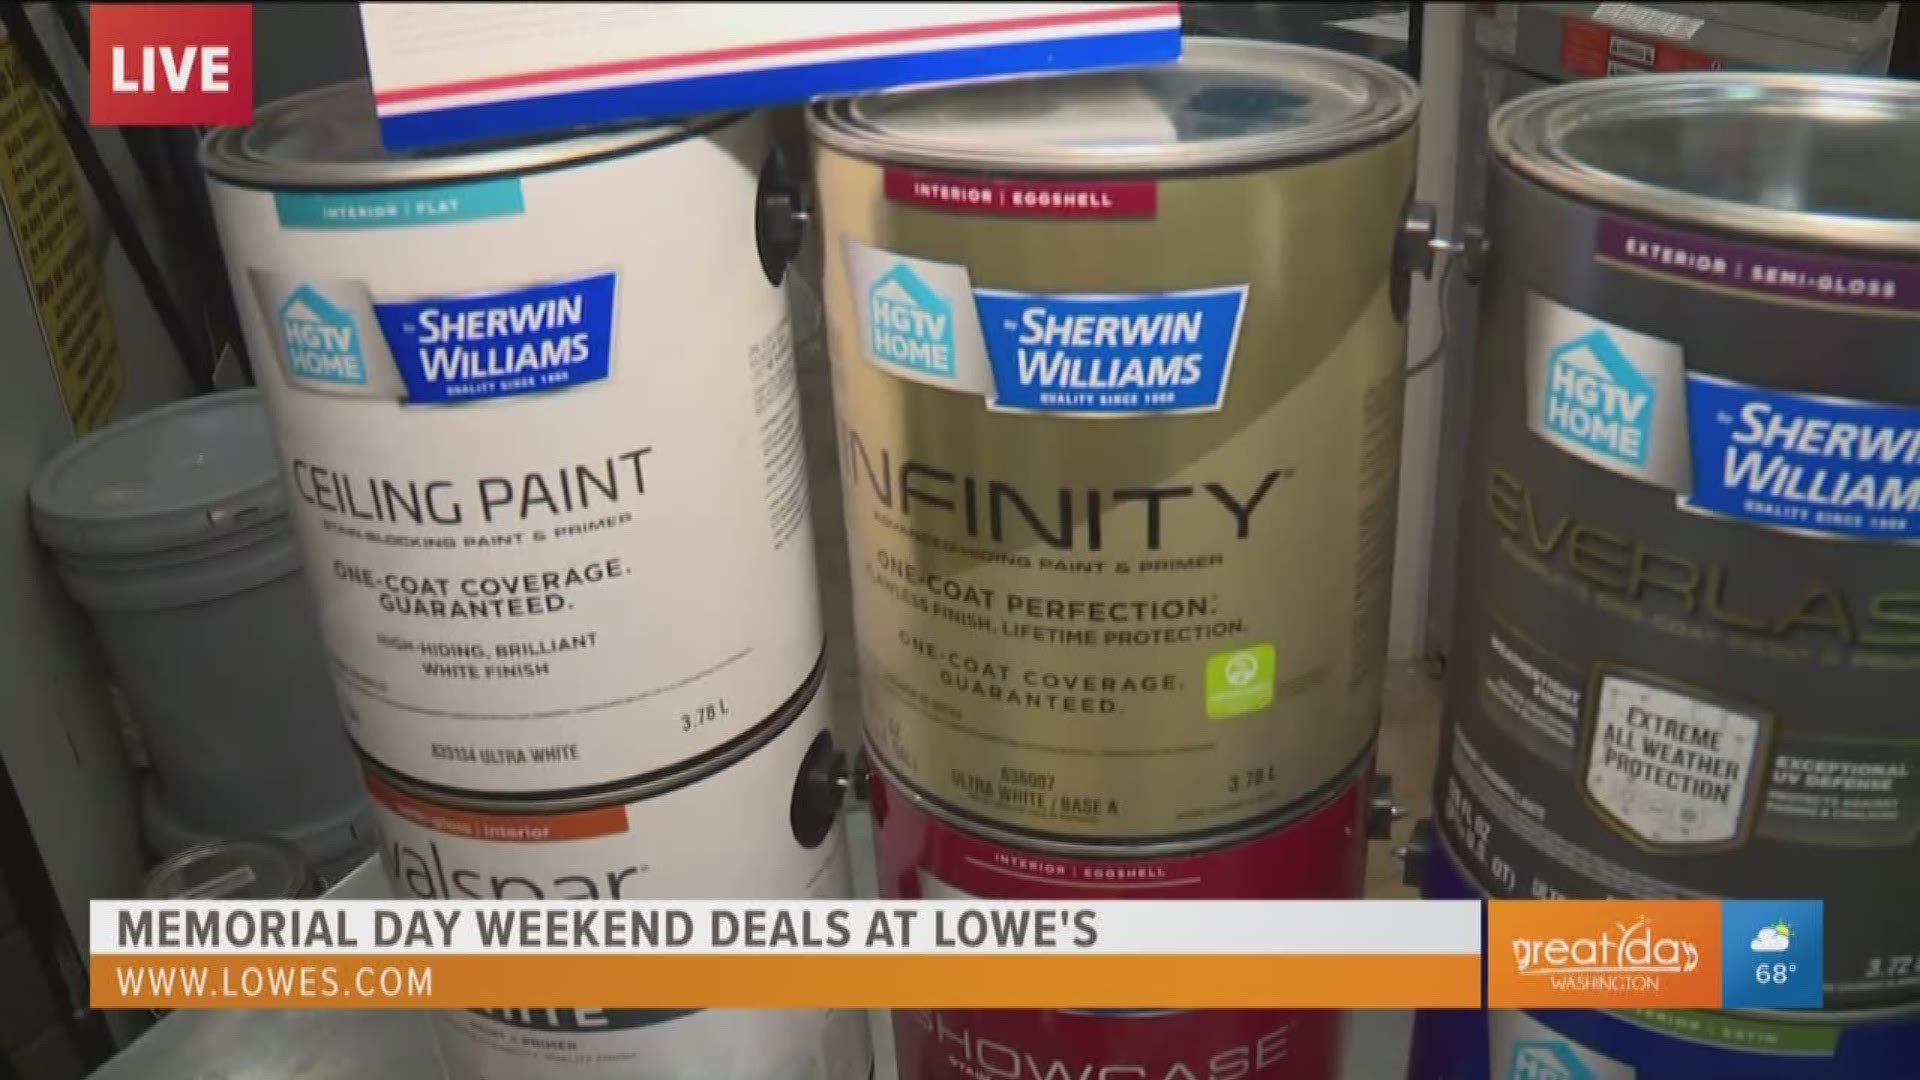 Get Huge Rebate Savings On Paint At Lowe s Memorial Day Weekend Sales 